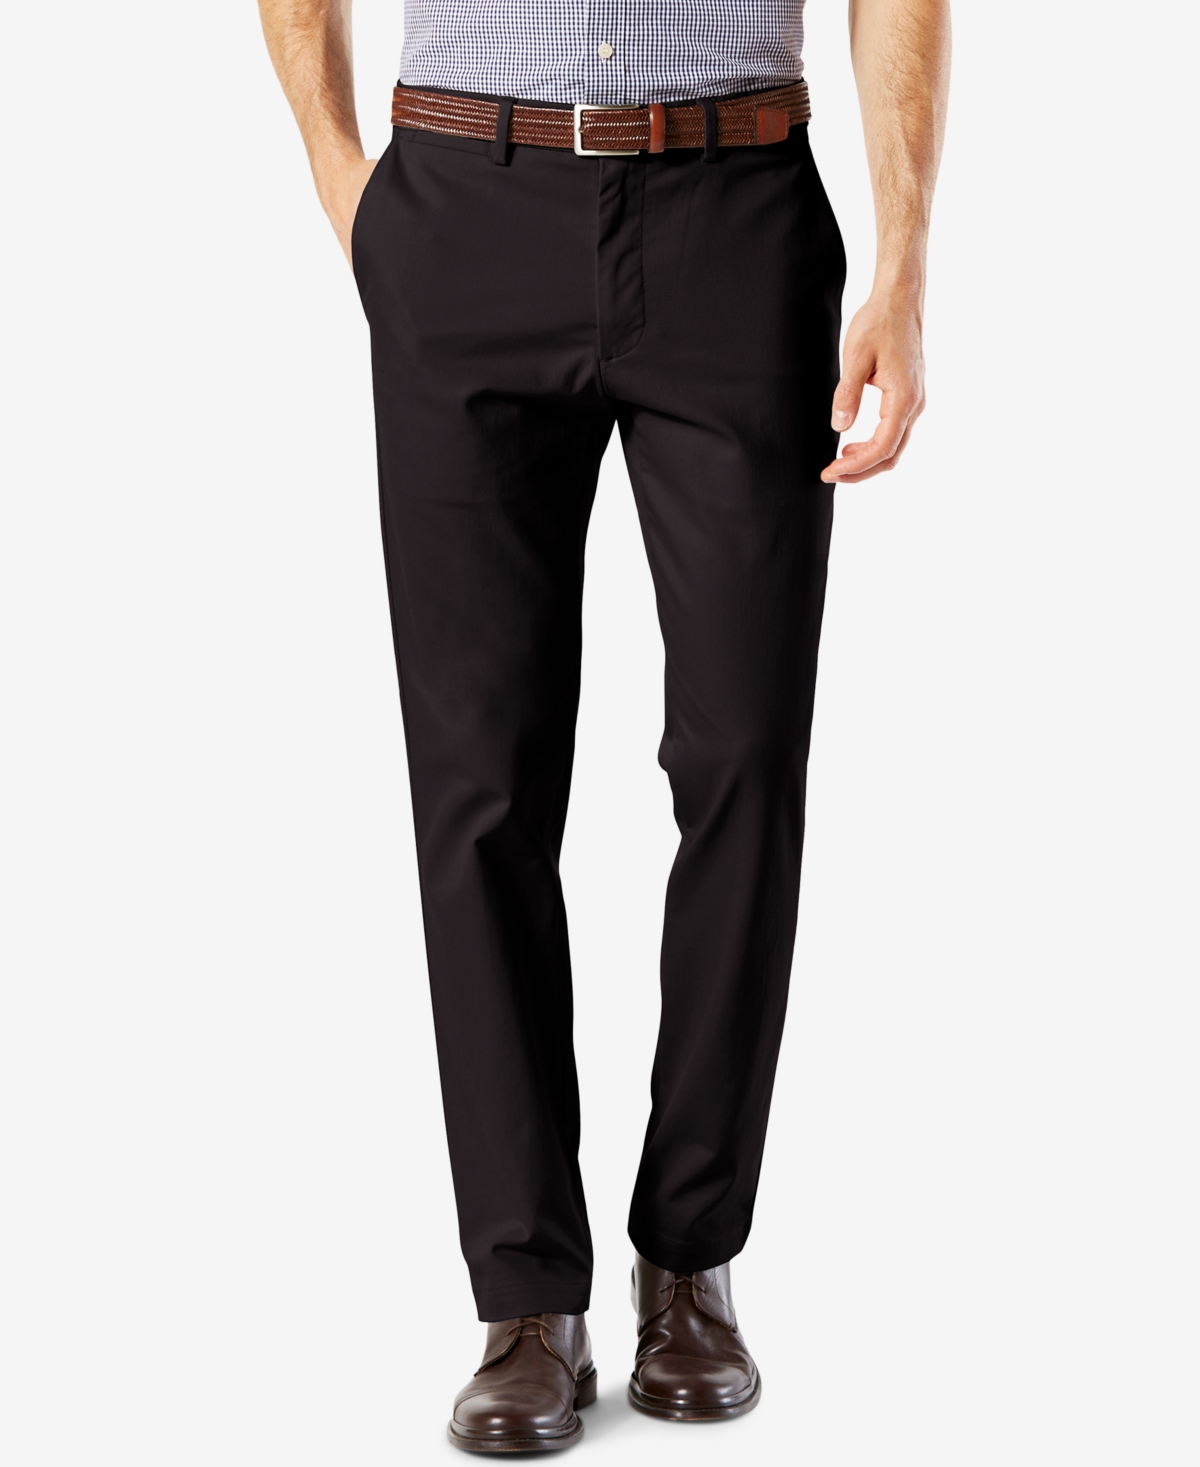 Men's Signature Lux Cotton Slim Fit Stretch Khaki Pants - Black